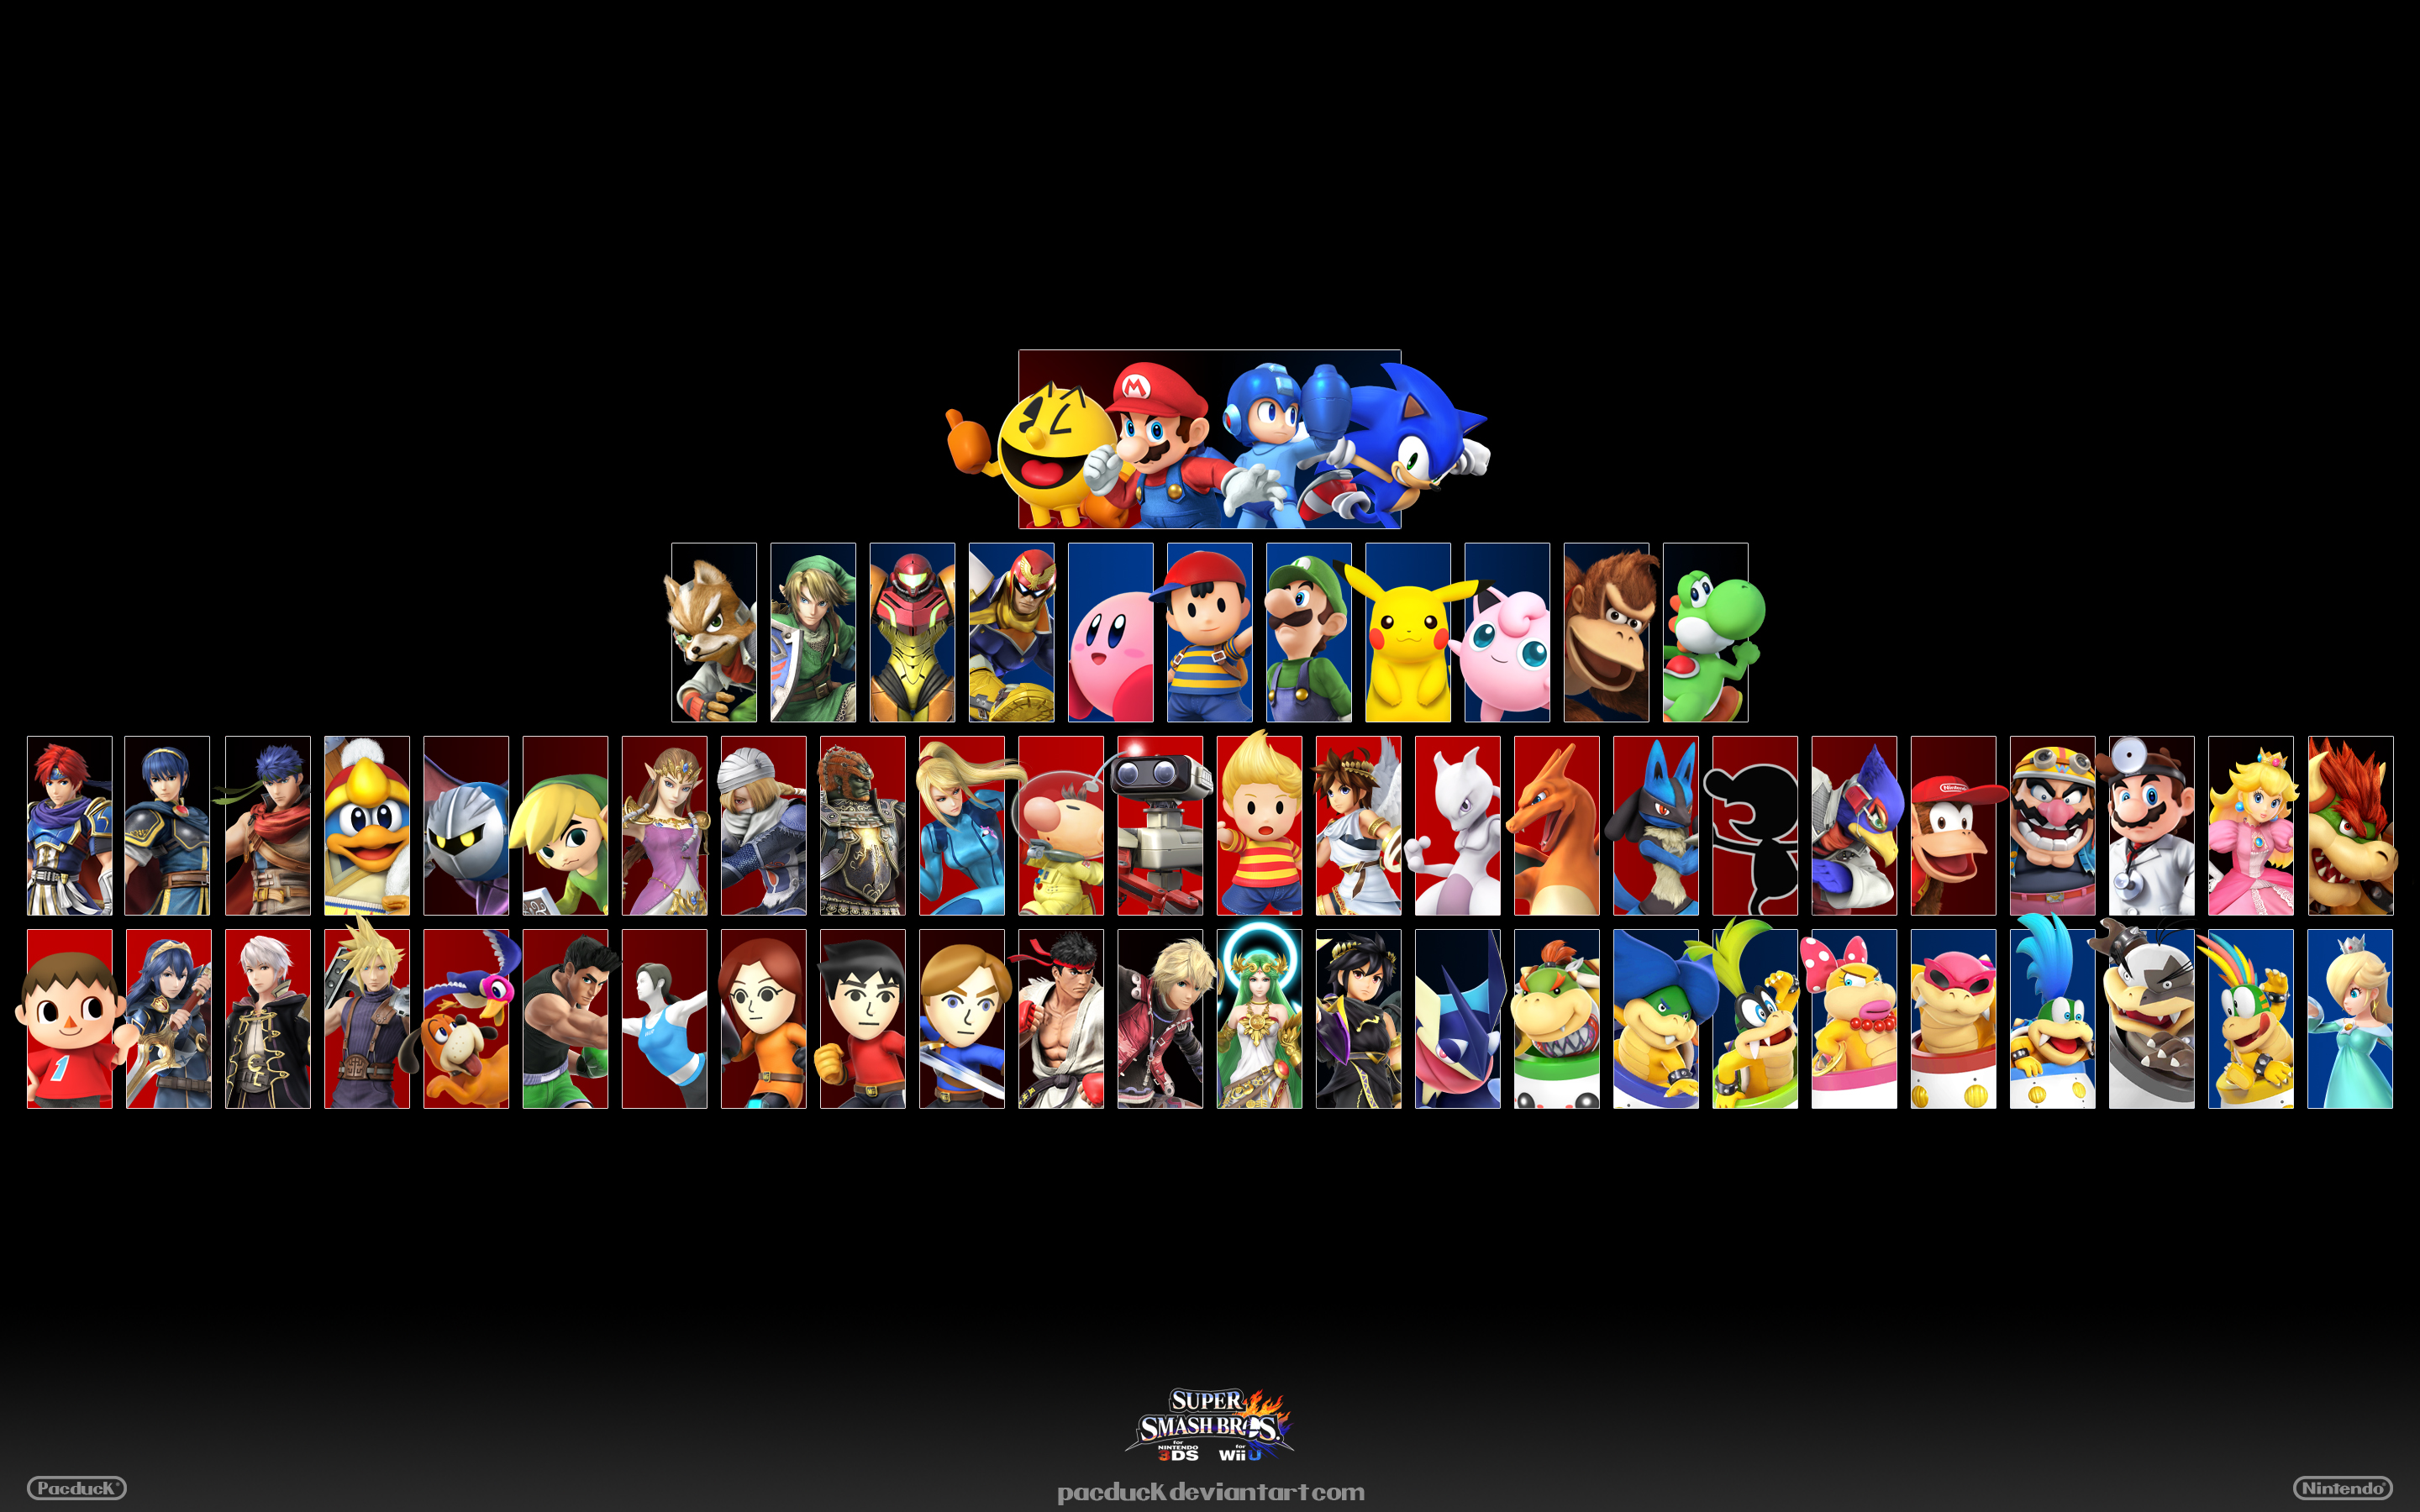 Super Smash Bros Wii U / 3DS Wallpaper by seancantrell on DeviantArt